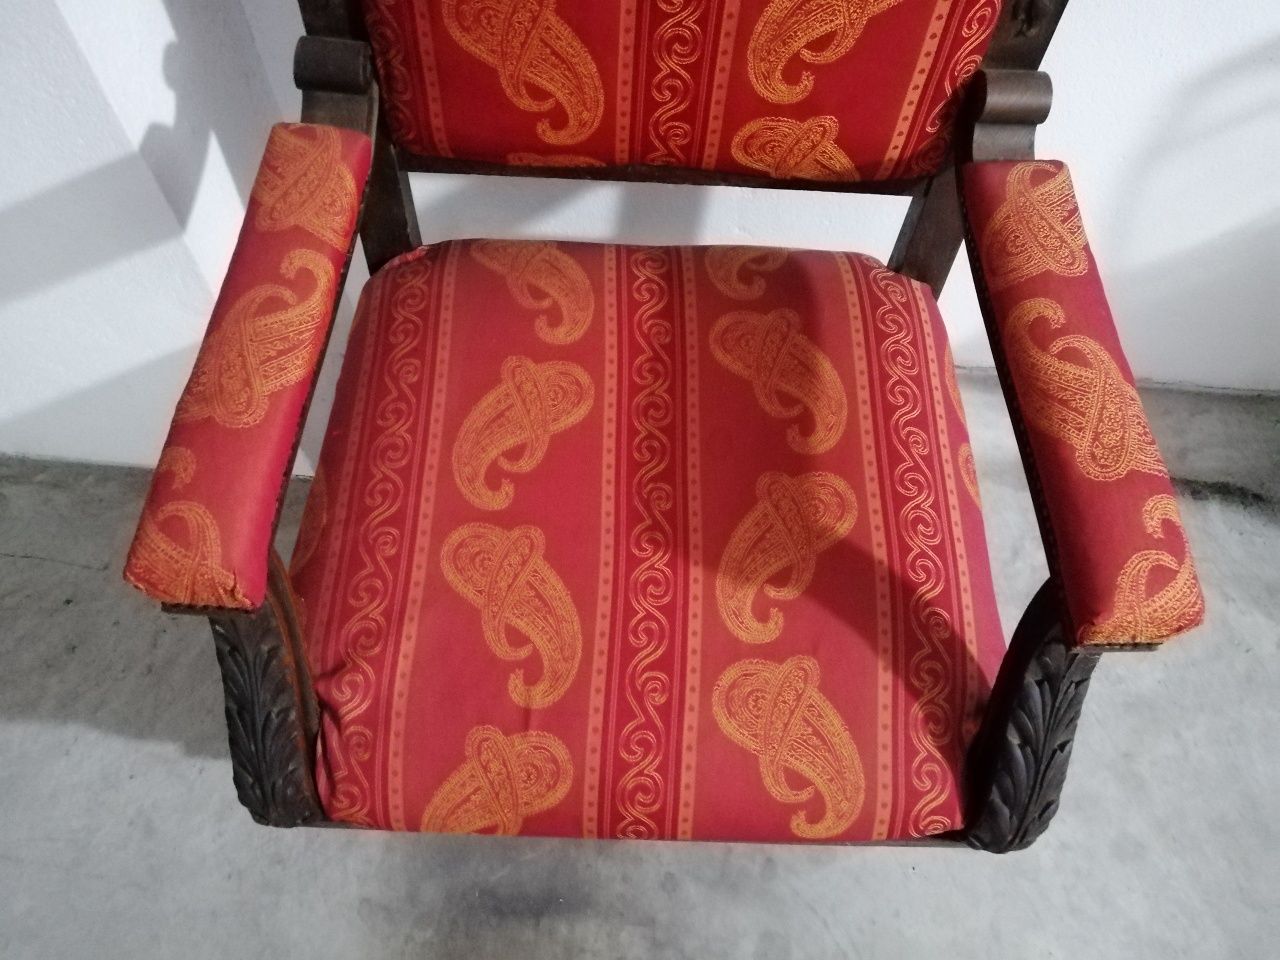 Cadeira antiga em madeira com + 400 anos